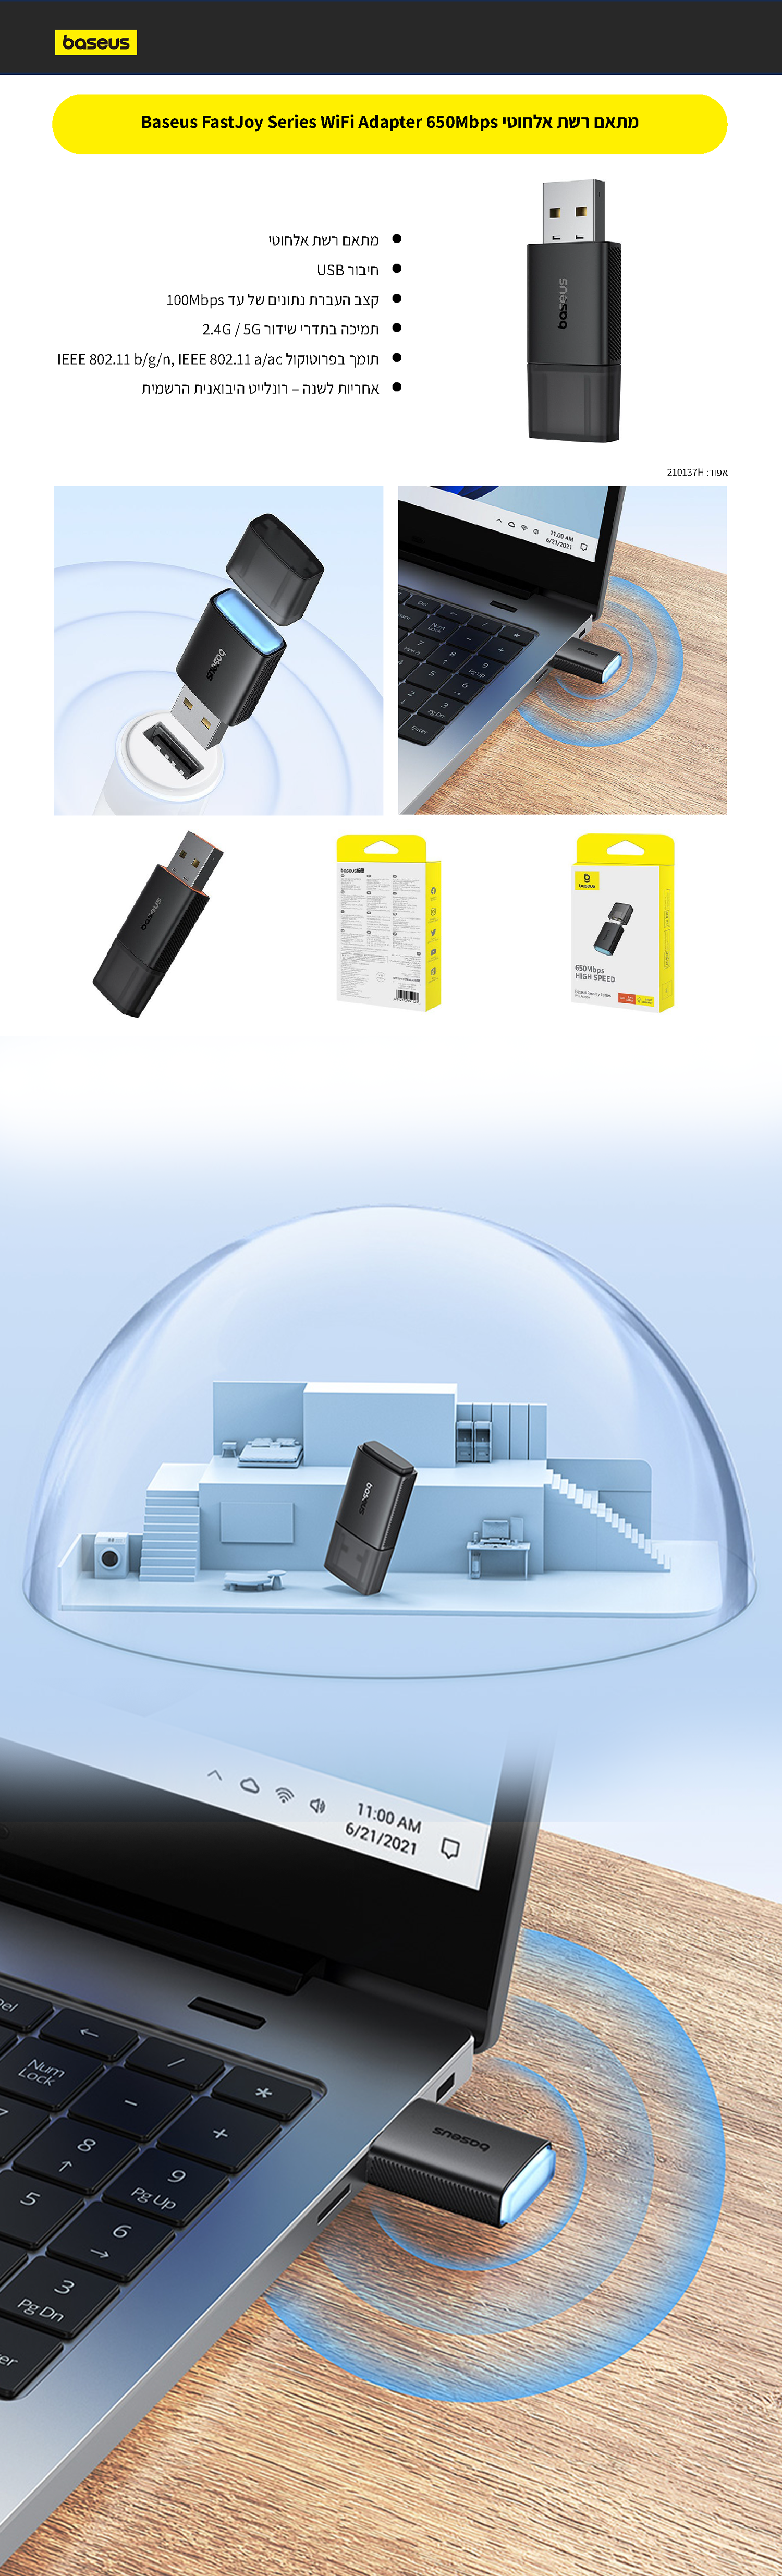 מתאם רשת אלחוטי Baseus FastJoy Series WiFi Adapter 650Mbps - צבע שחור אחריות לשנה ע"י היבואן הרשמי